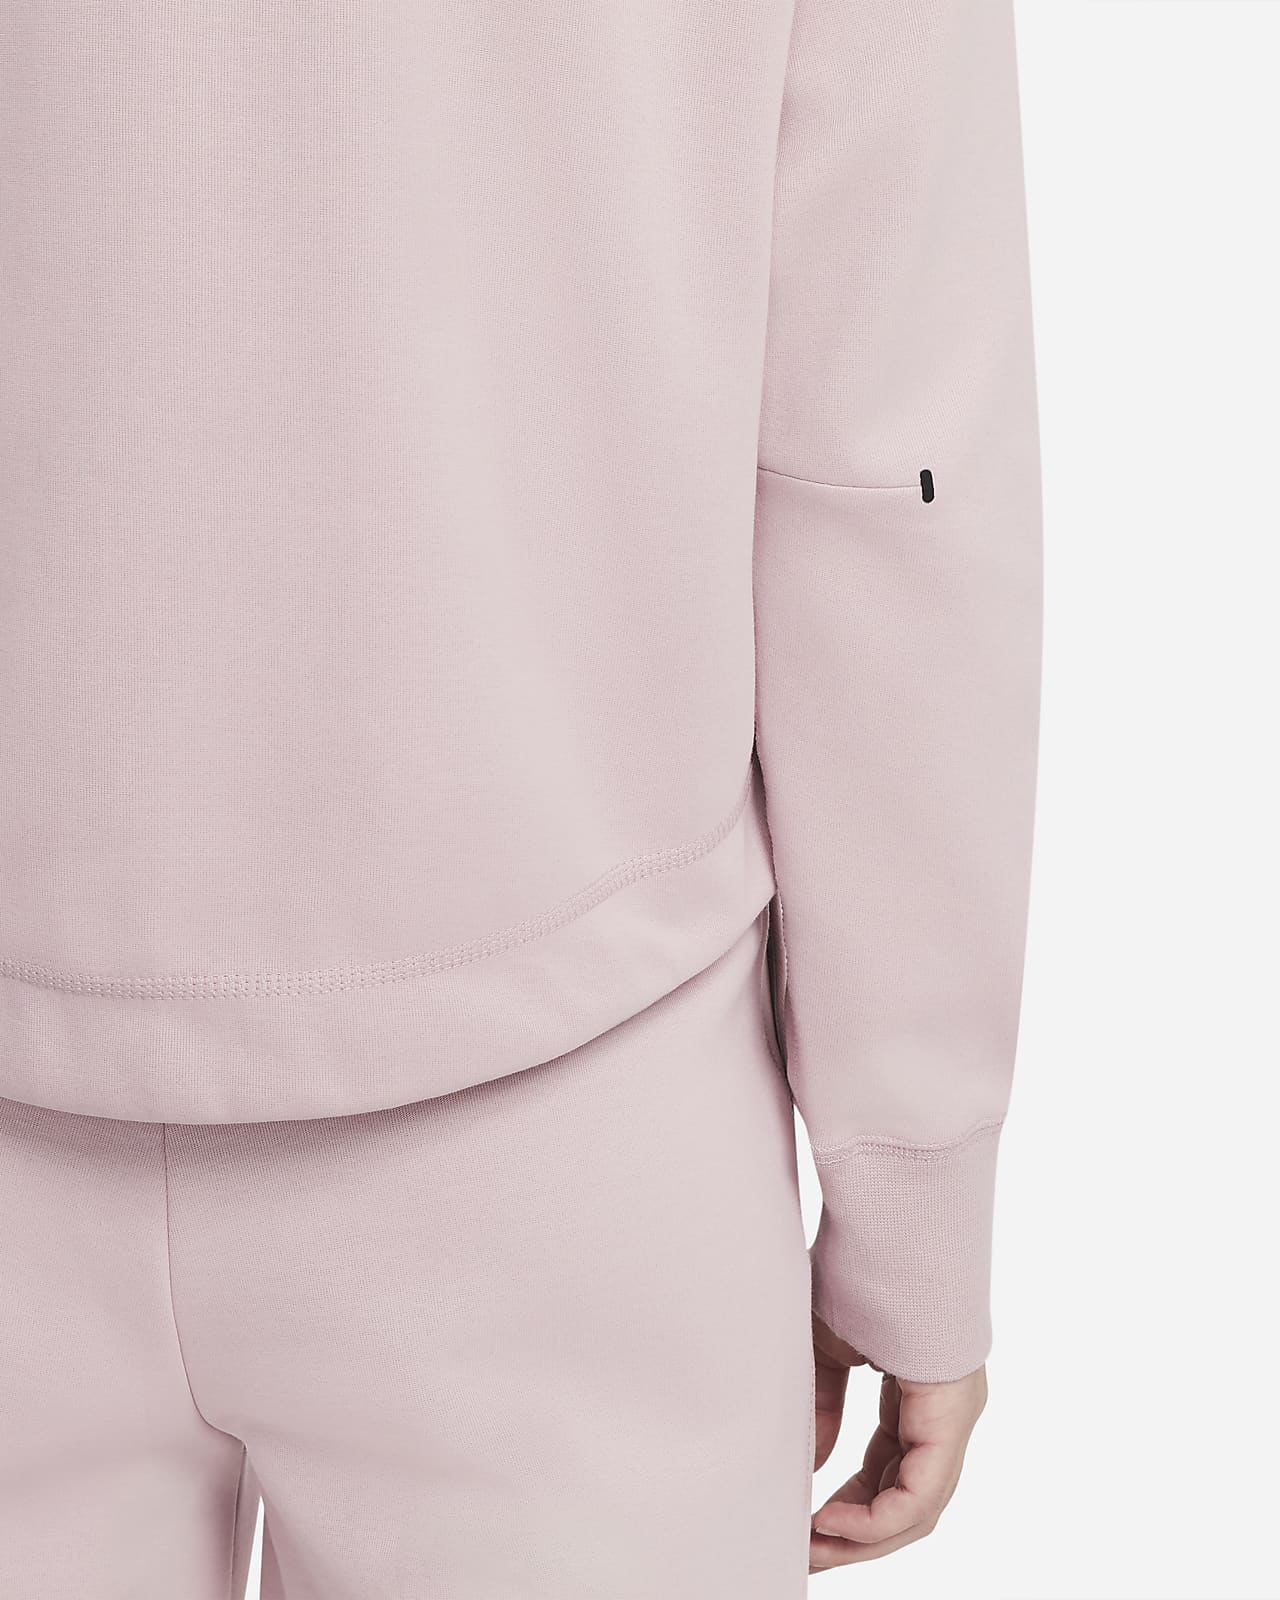 nike pink fleece hoodie